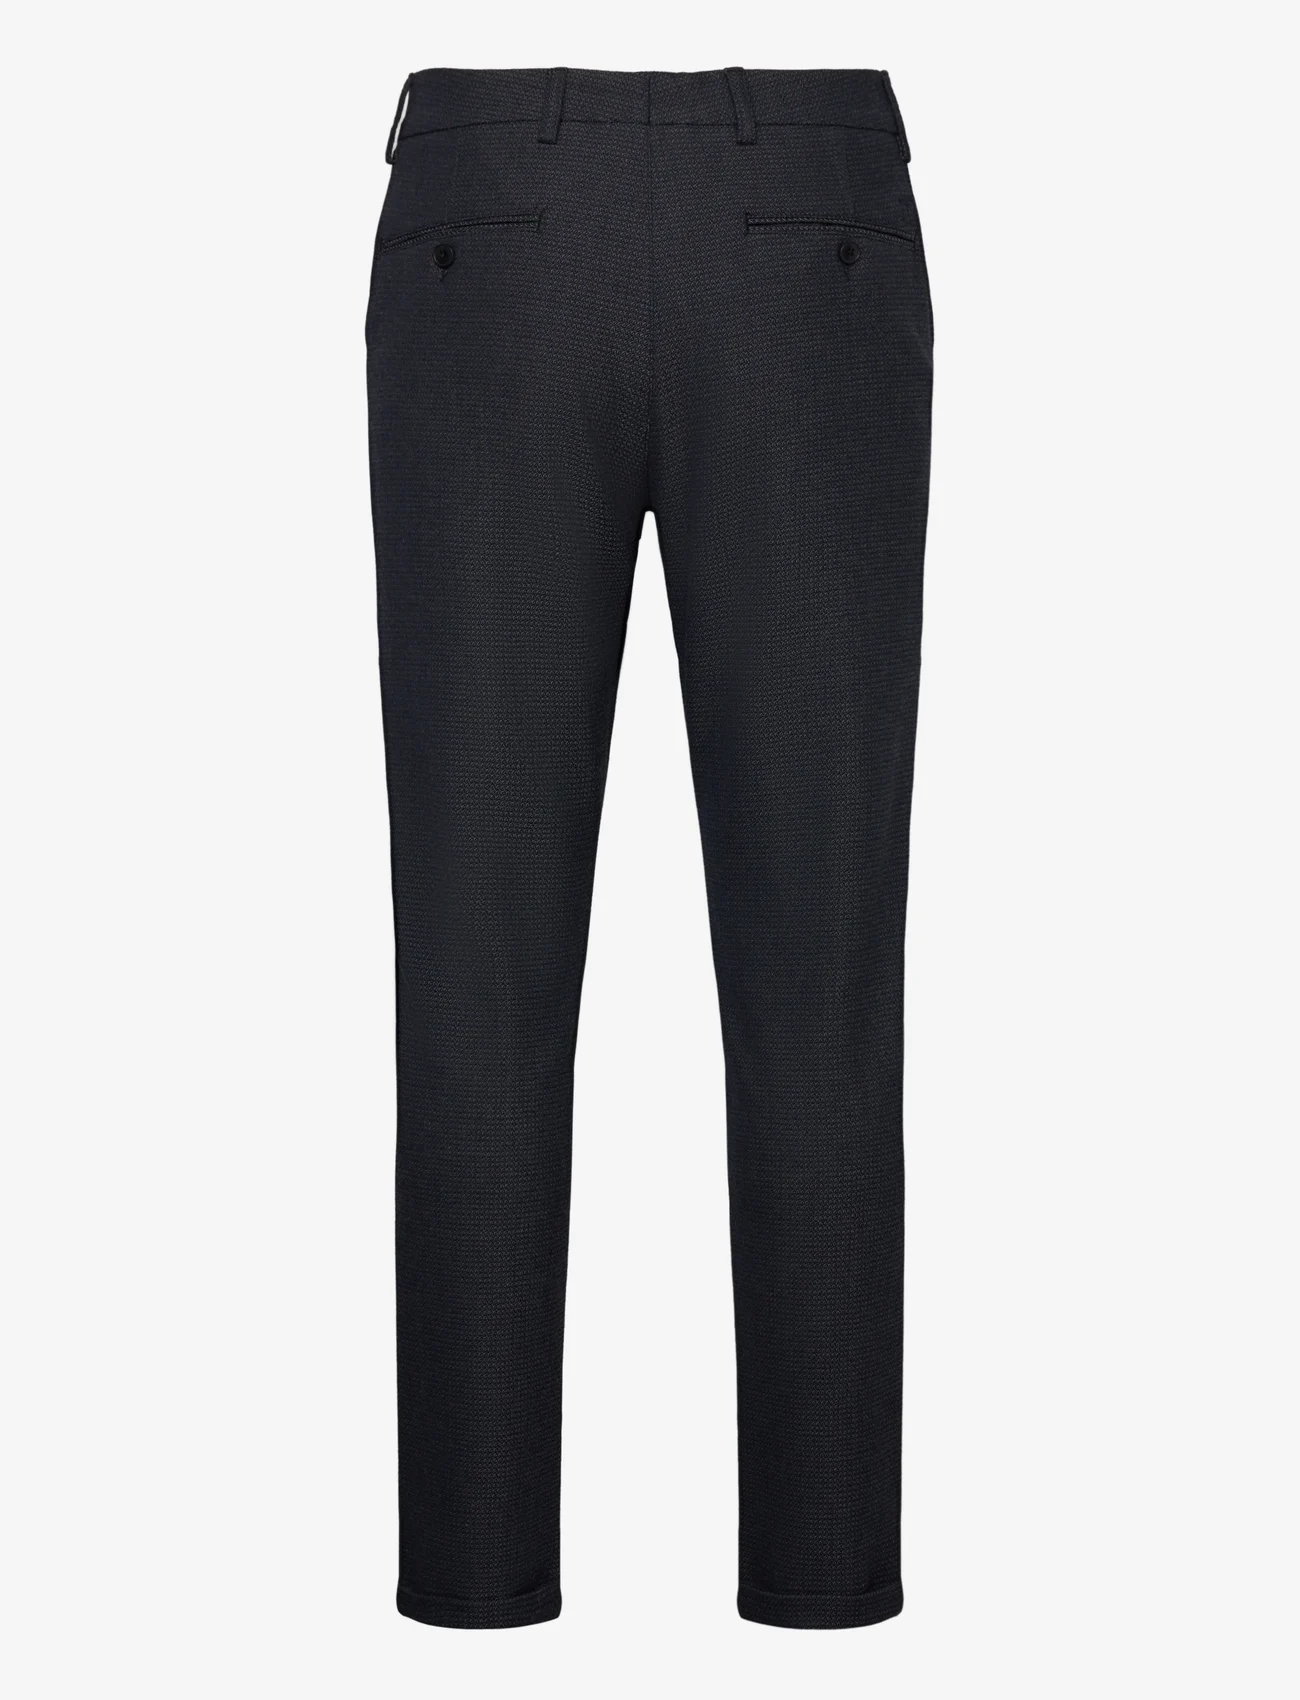 Les Deux - Como Structure Suit Pants - suit trousers - dark navy - 1